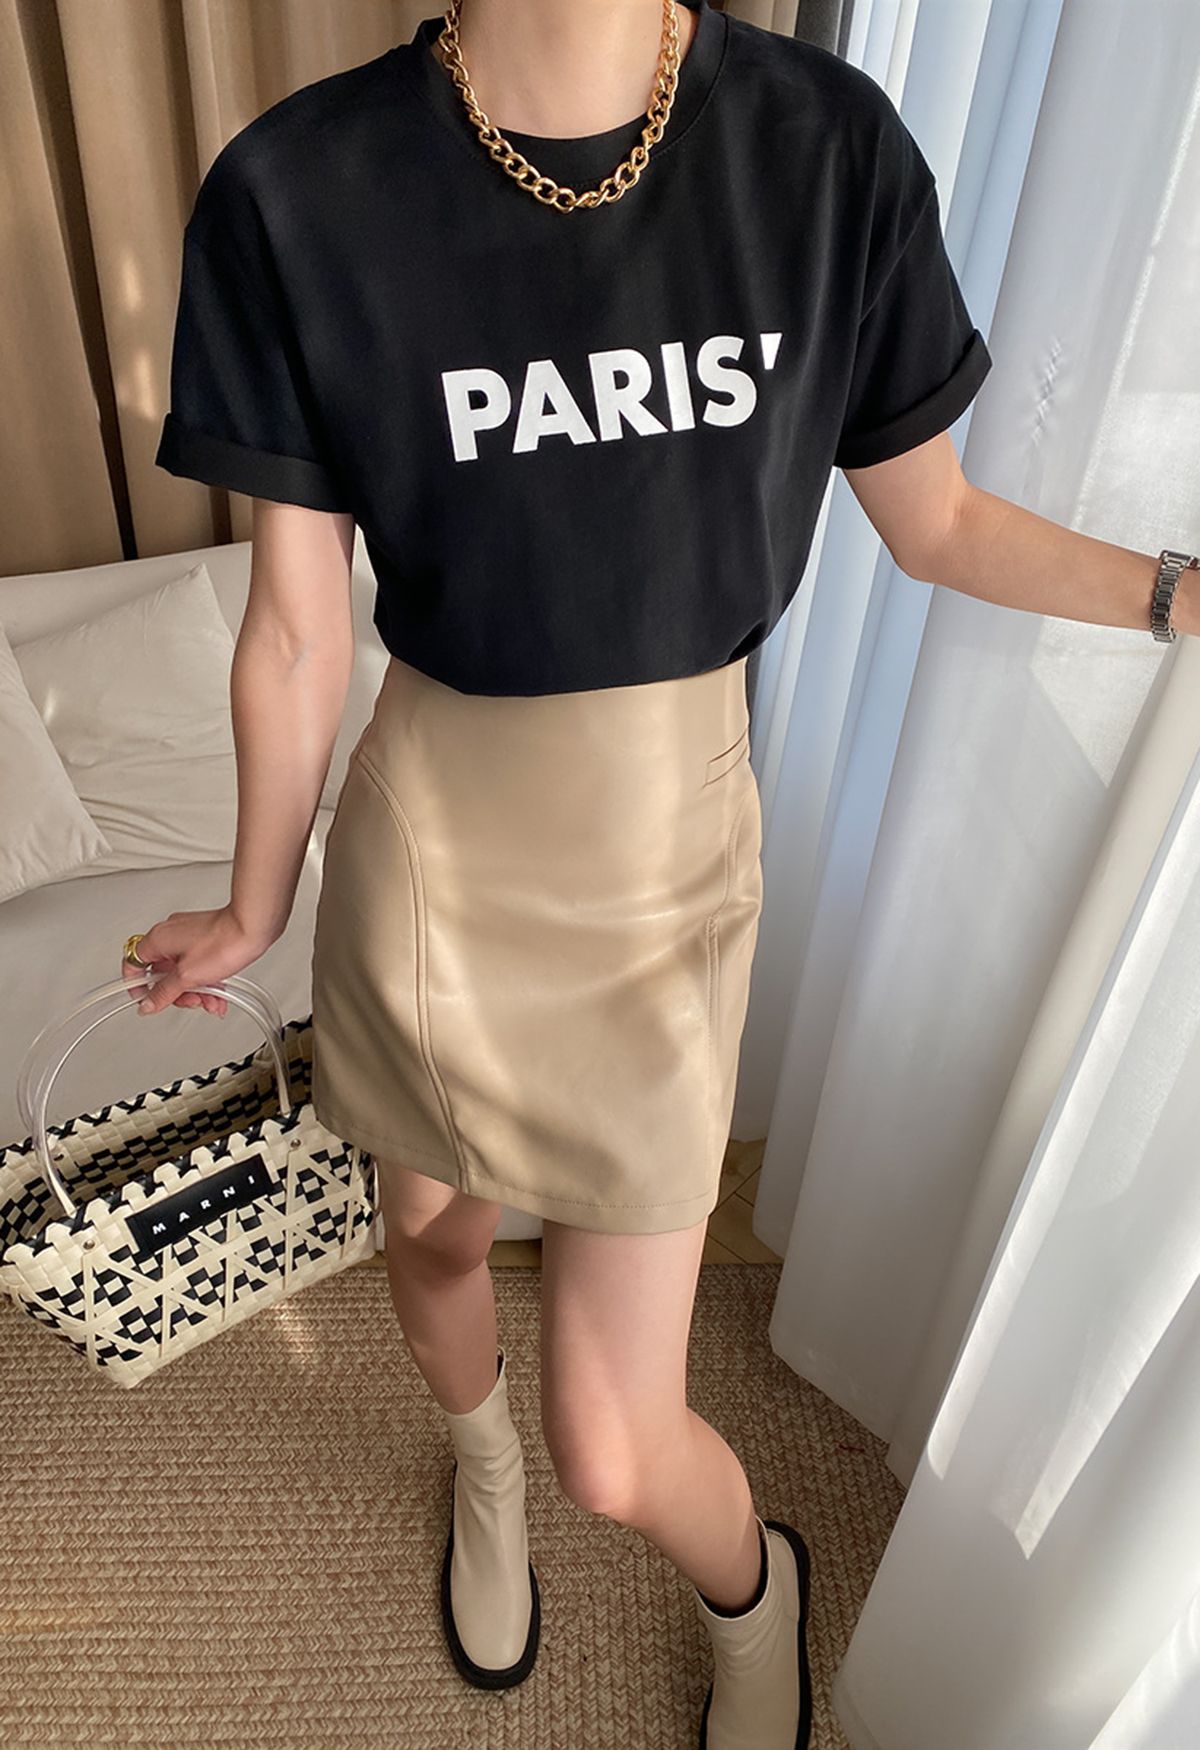 T-shirt col rond imprimé Paris en noir